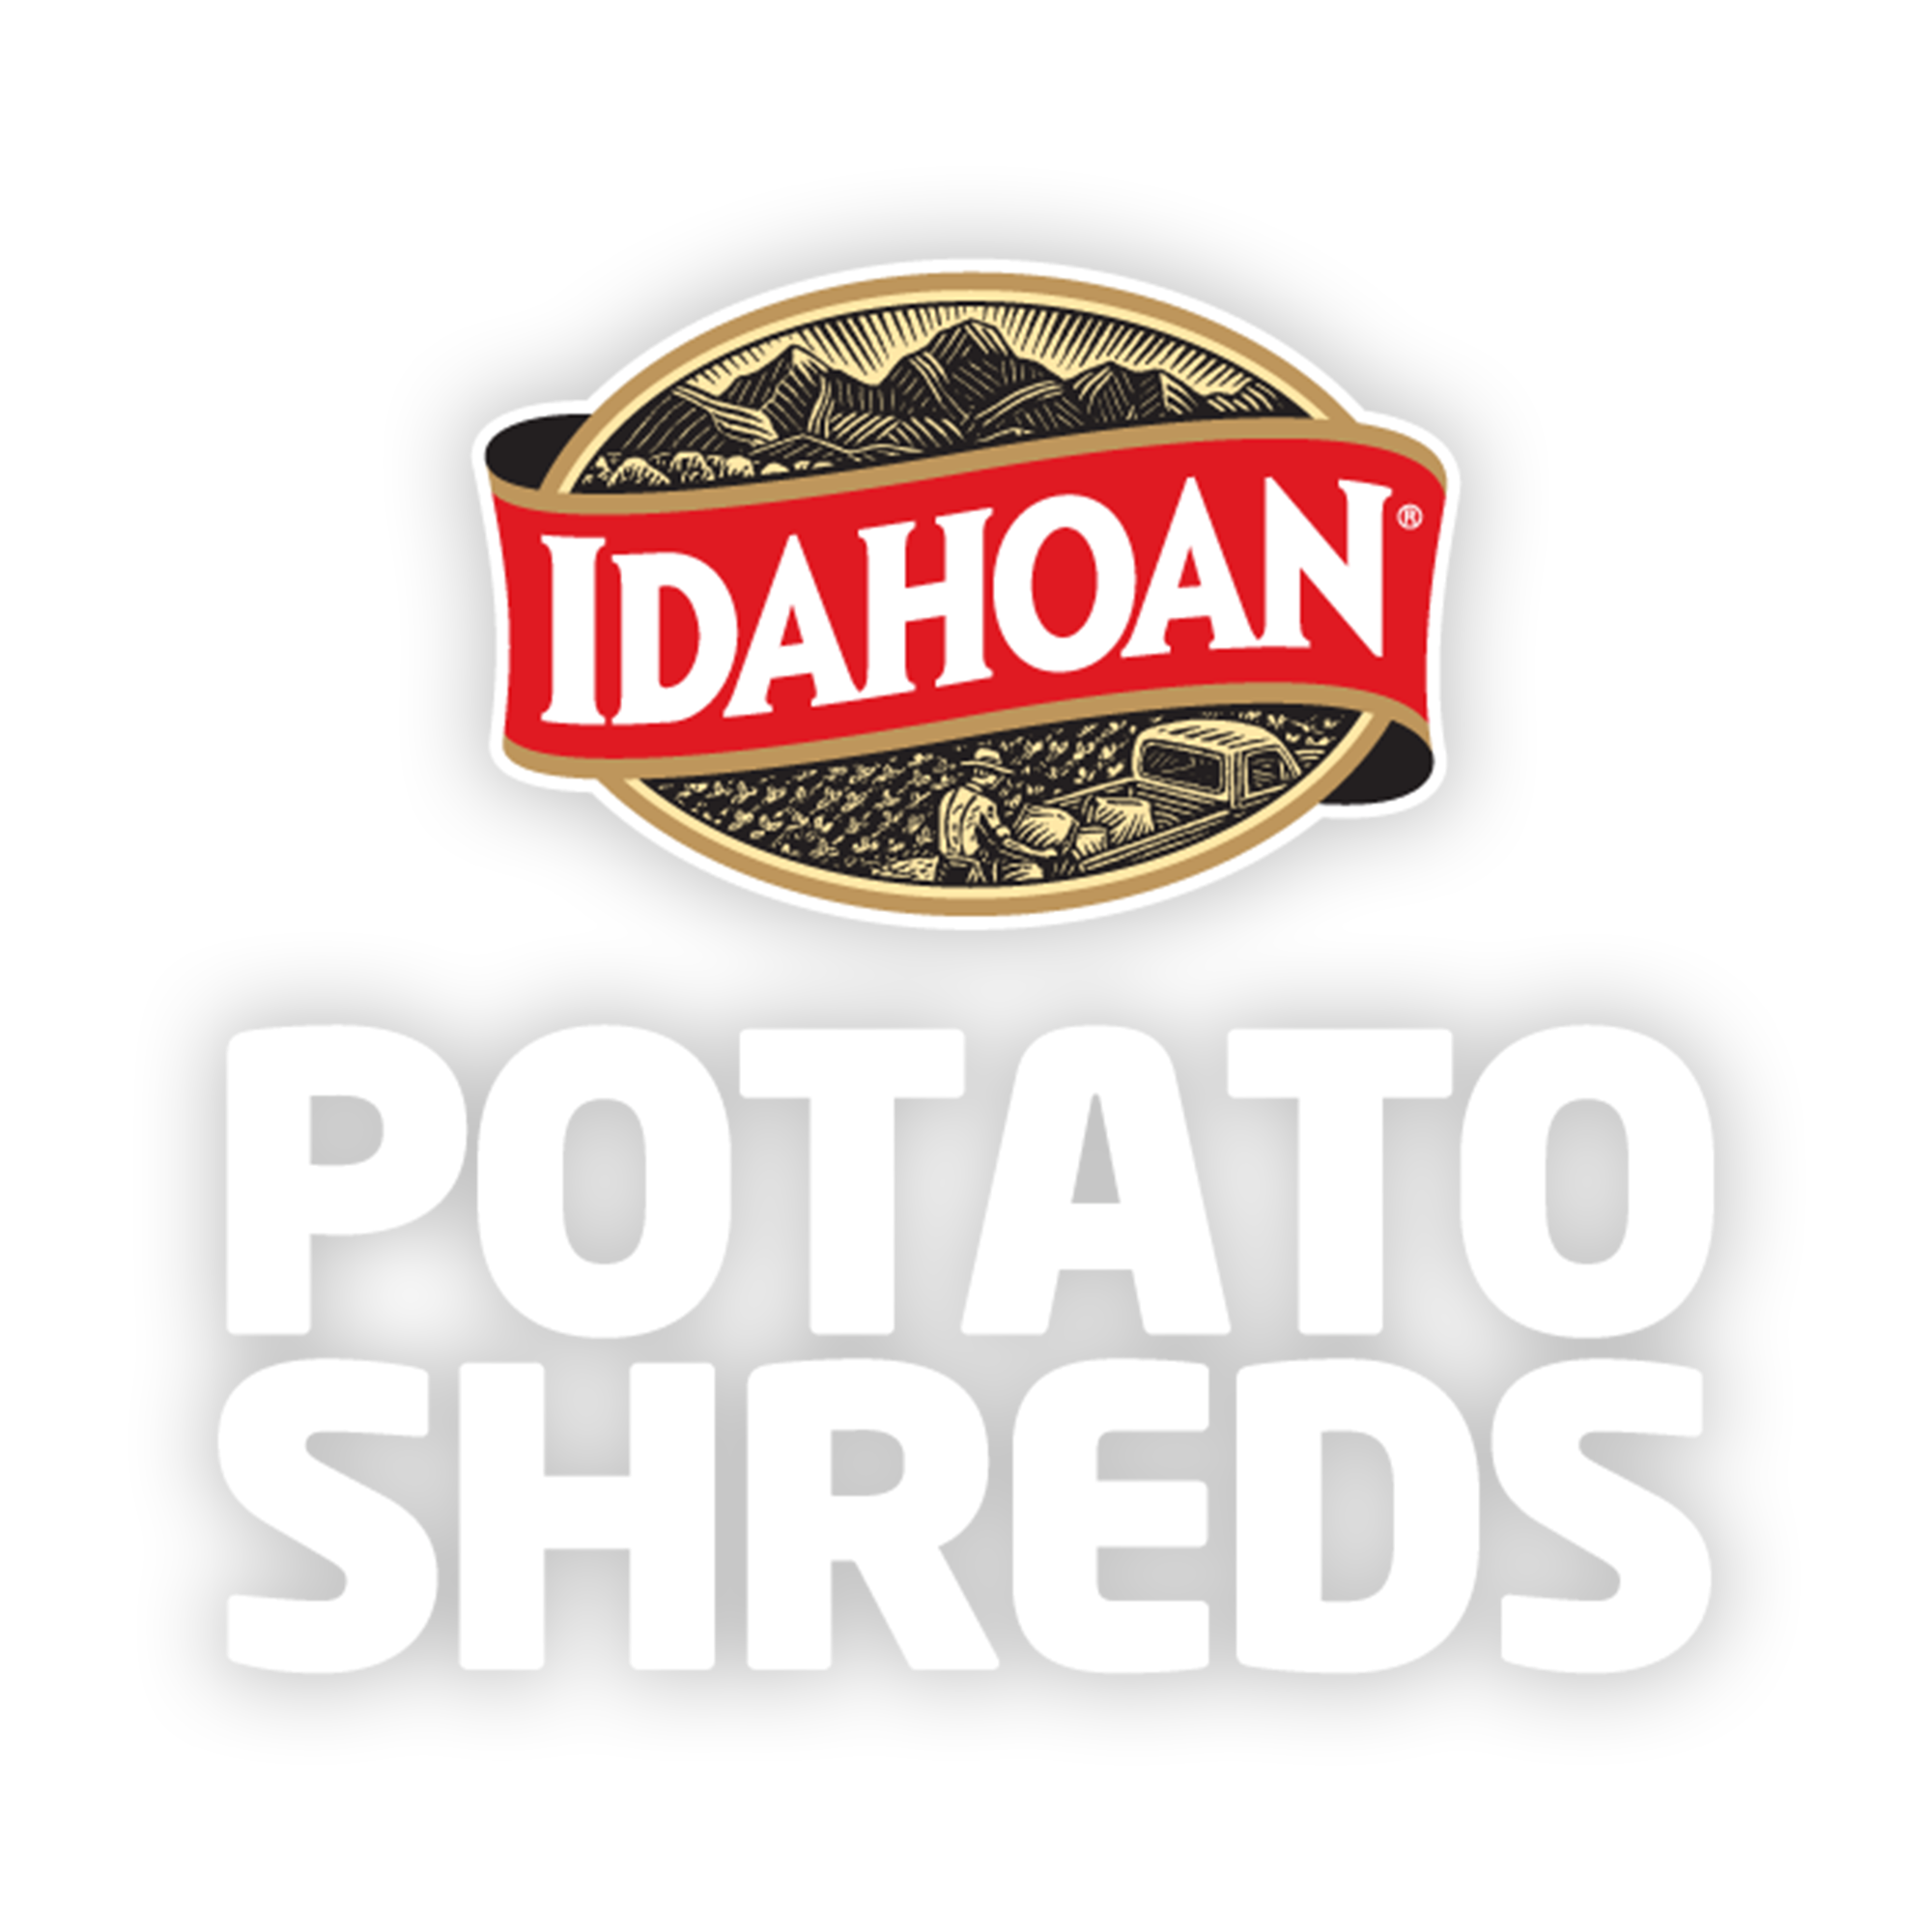 Portfolio Expansion With the New Idahoan Potato Shreds – Potato